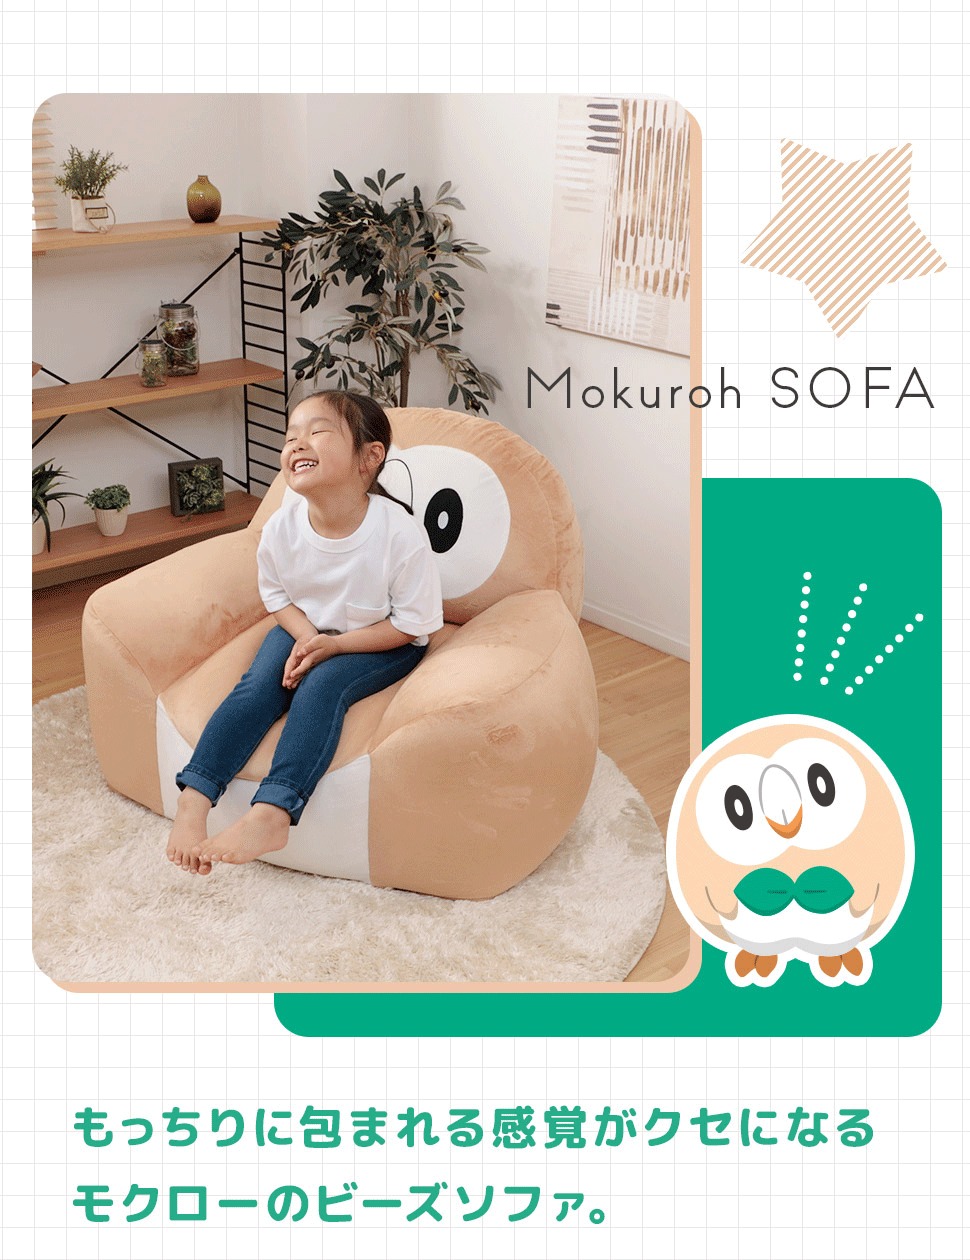 Pokémon: ¡Un sofa inspirado en Rowlet ha sido anunciado en Japón! 20